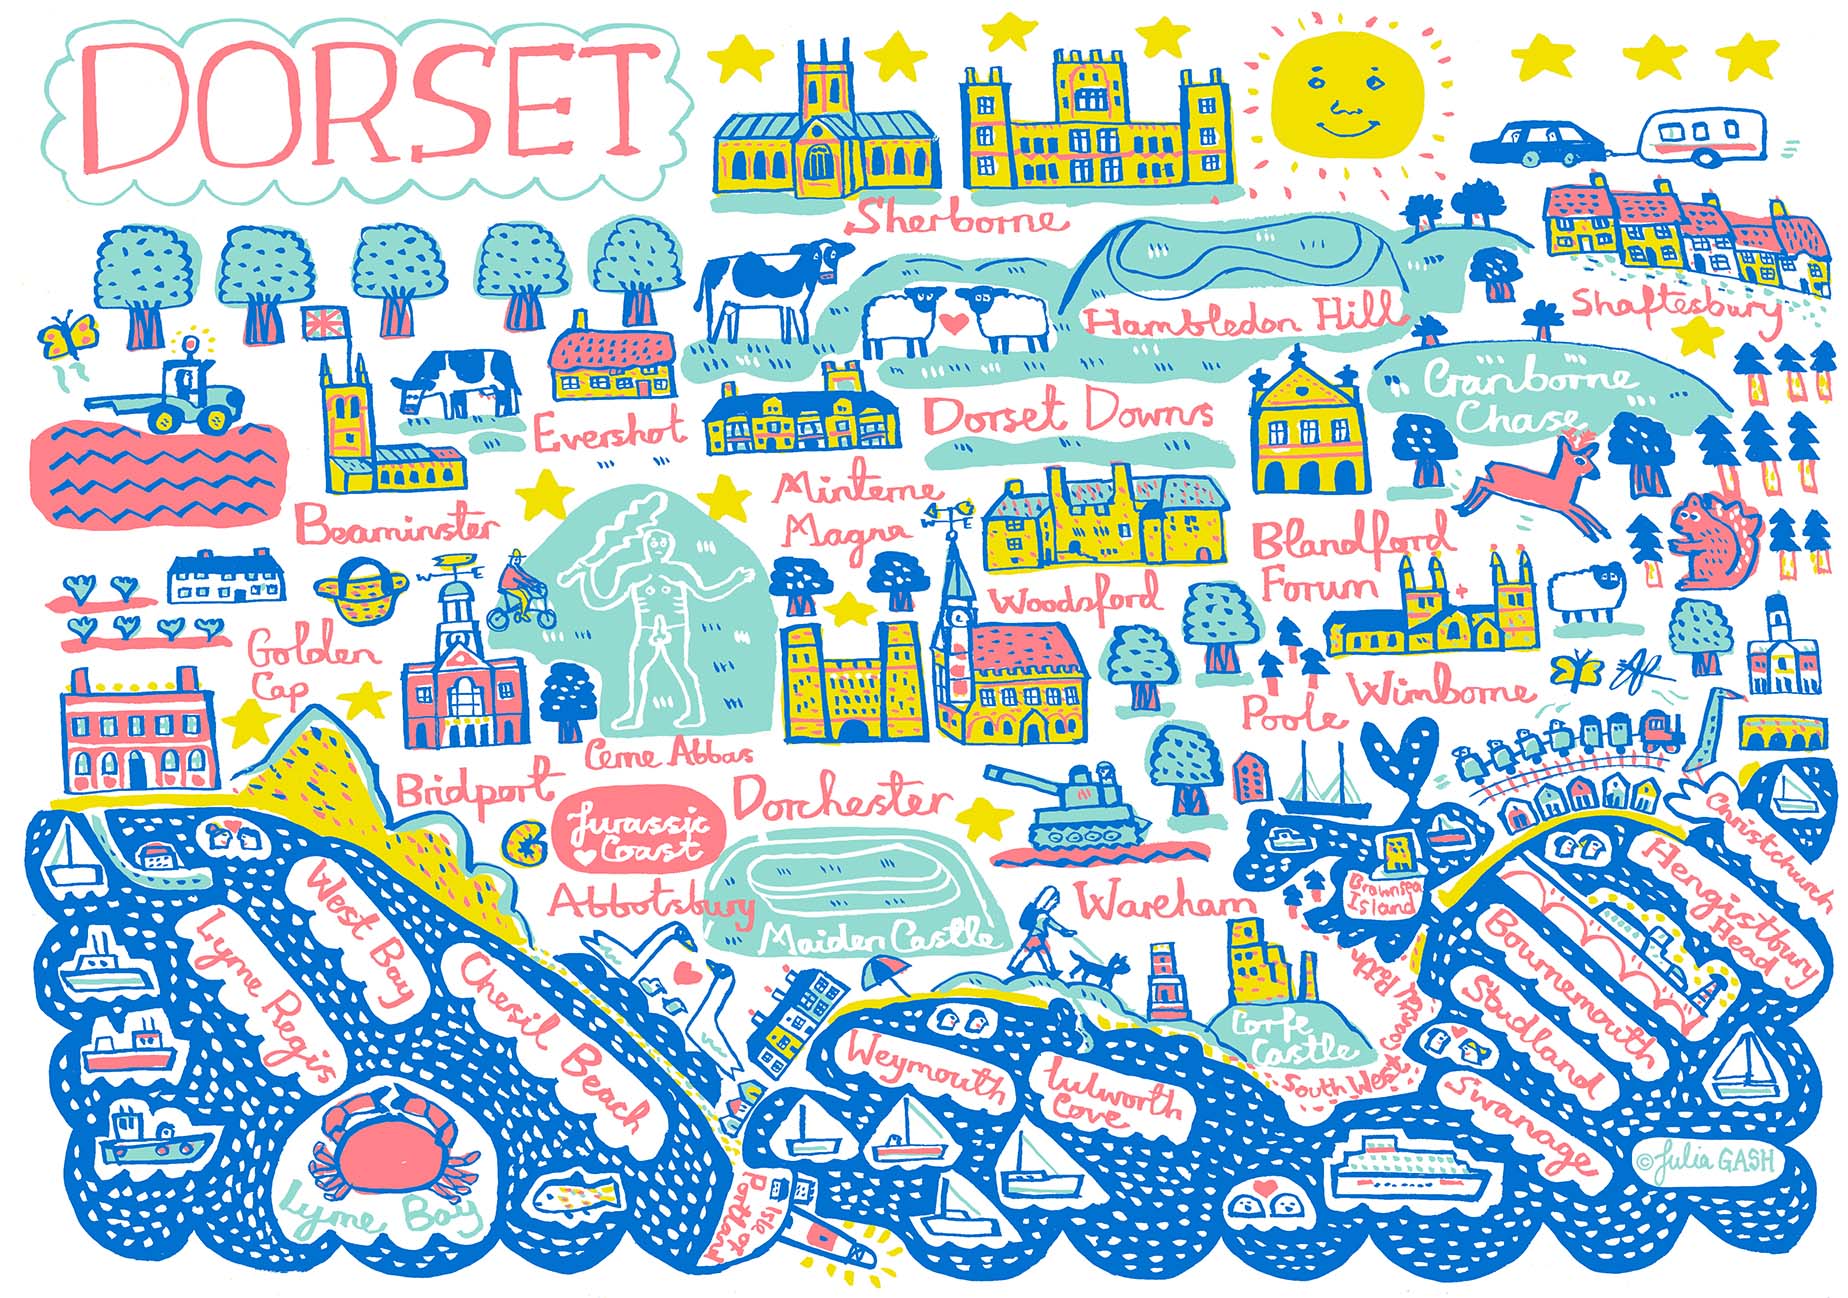 Dorset Postcard - Julia Gash